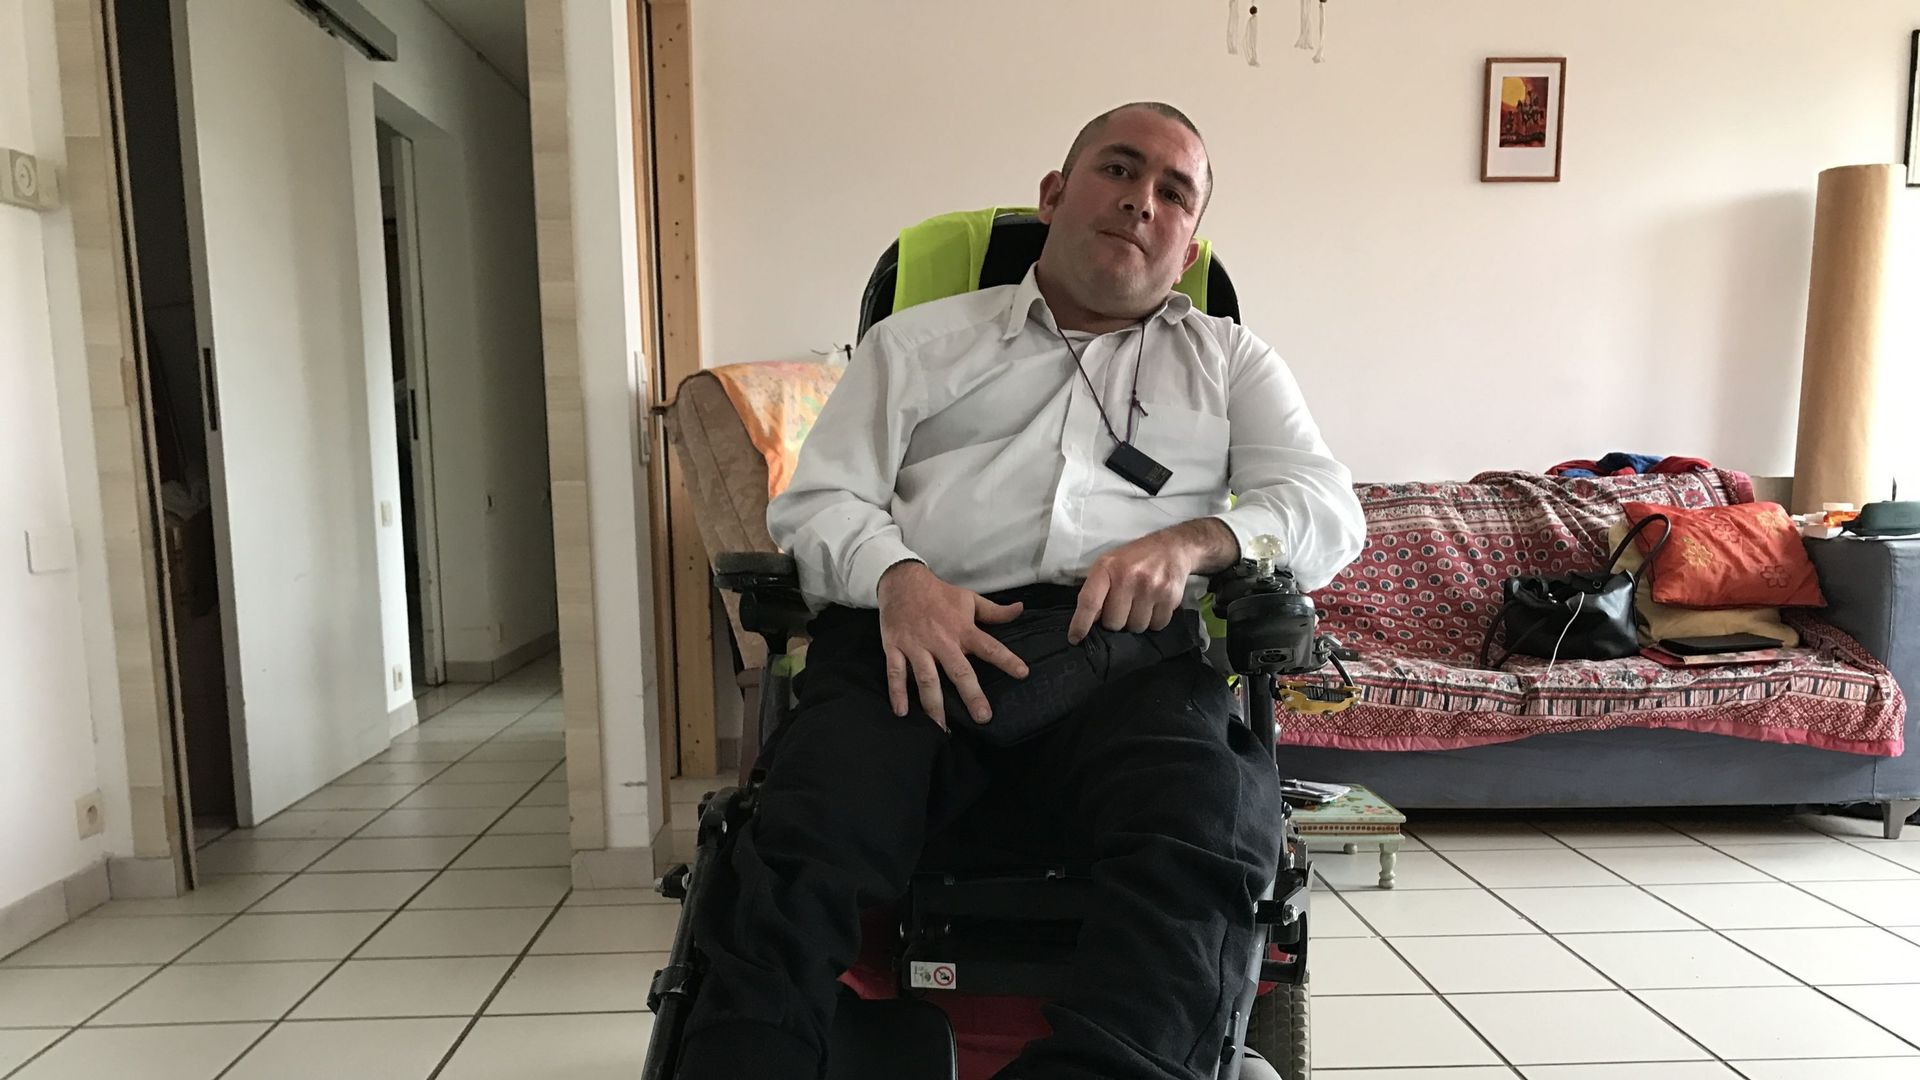 Il se bat dans sa chaise électrique pour qu'on revoit le système d'évaluation des besoins des handicapés qu'il juge archaïque